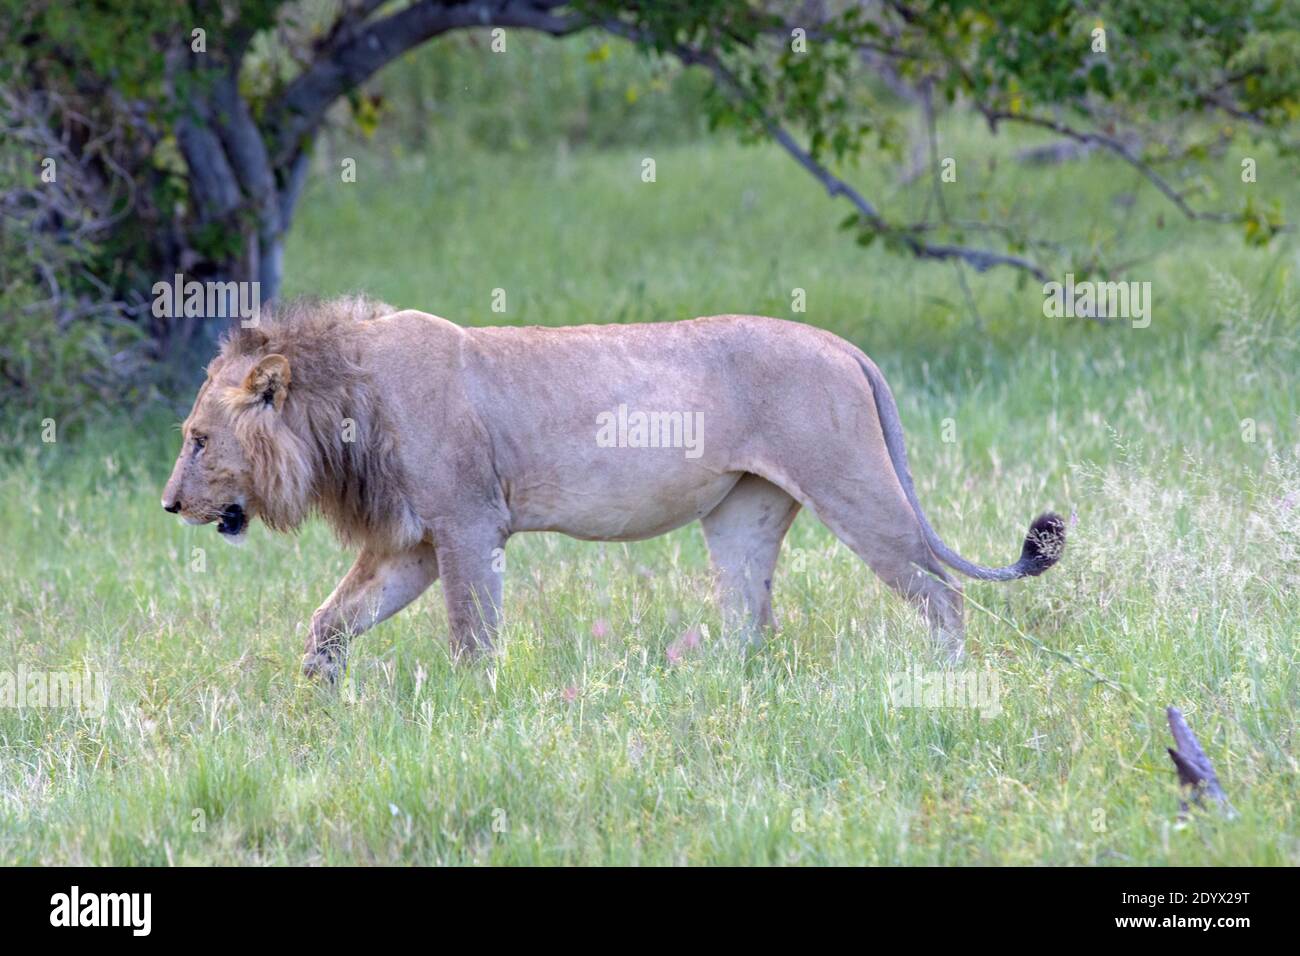 Afrikanischer Löwe (Panthera leo). Profil eines erwachsenen Männchens, das zwischen Grünlandvegetation spazierengeht. Gewölbter Bauch ist ein Hinweis auf eine neue Mahlzeit. Grün c Stockfoto